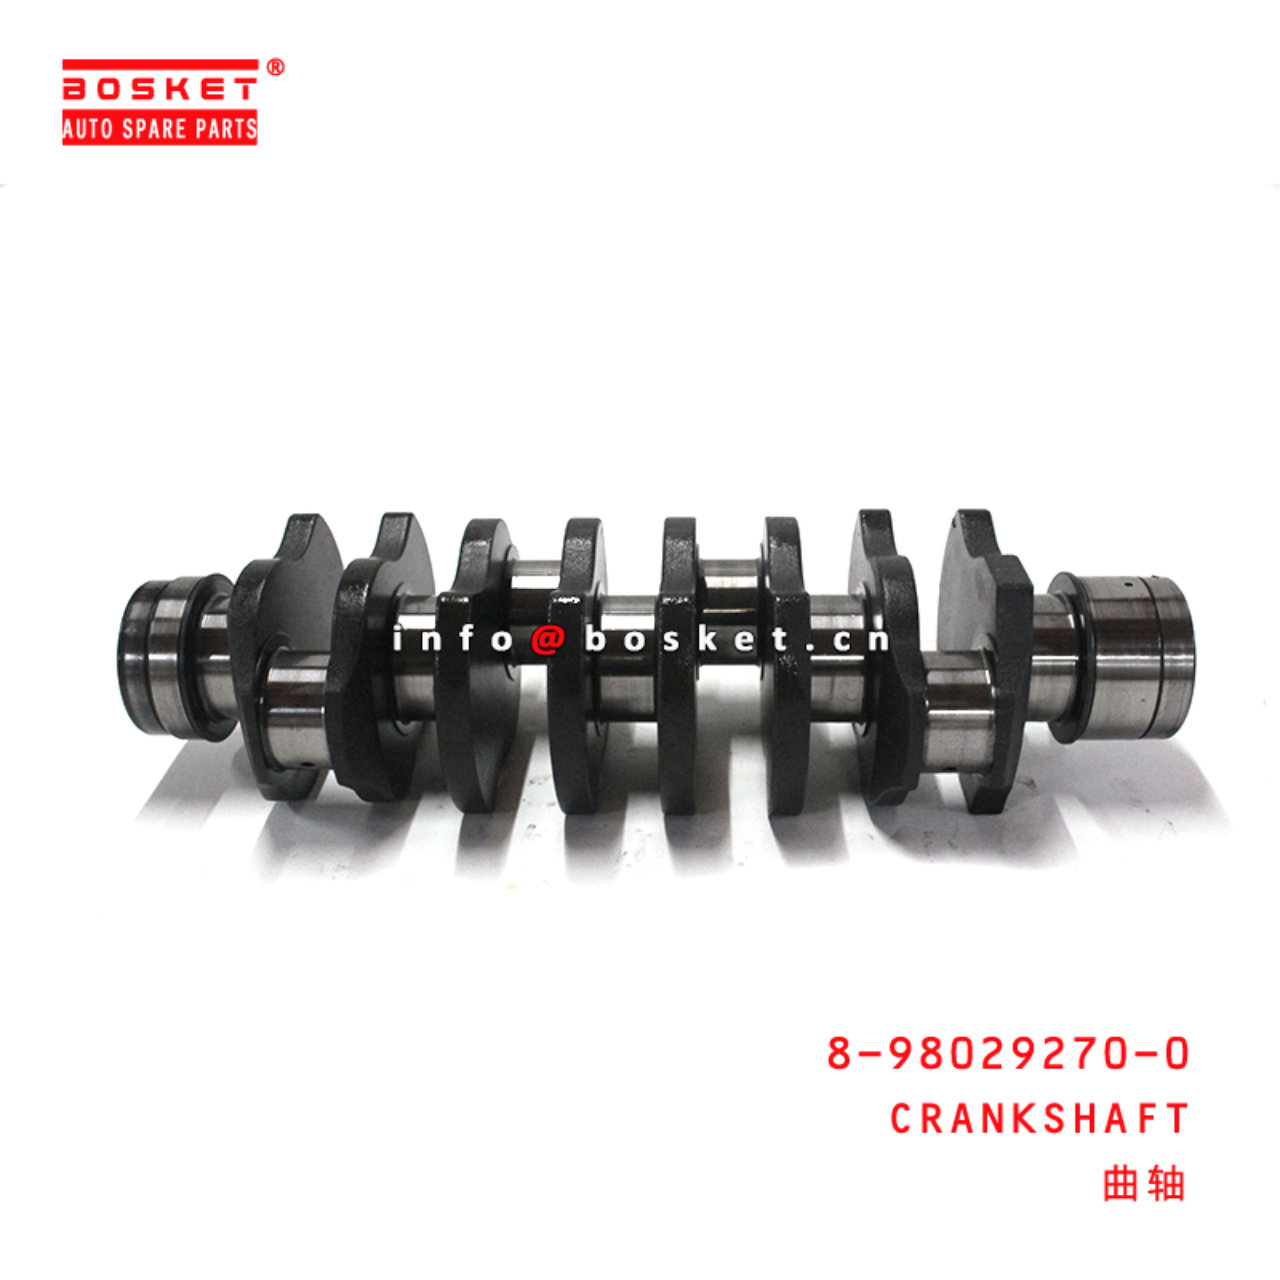 8-98029270-0 Crankshaft 8980292700 Suitable for ISUZU 700P 4HK1 